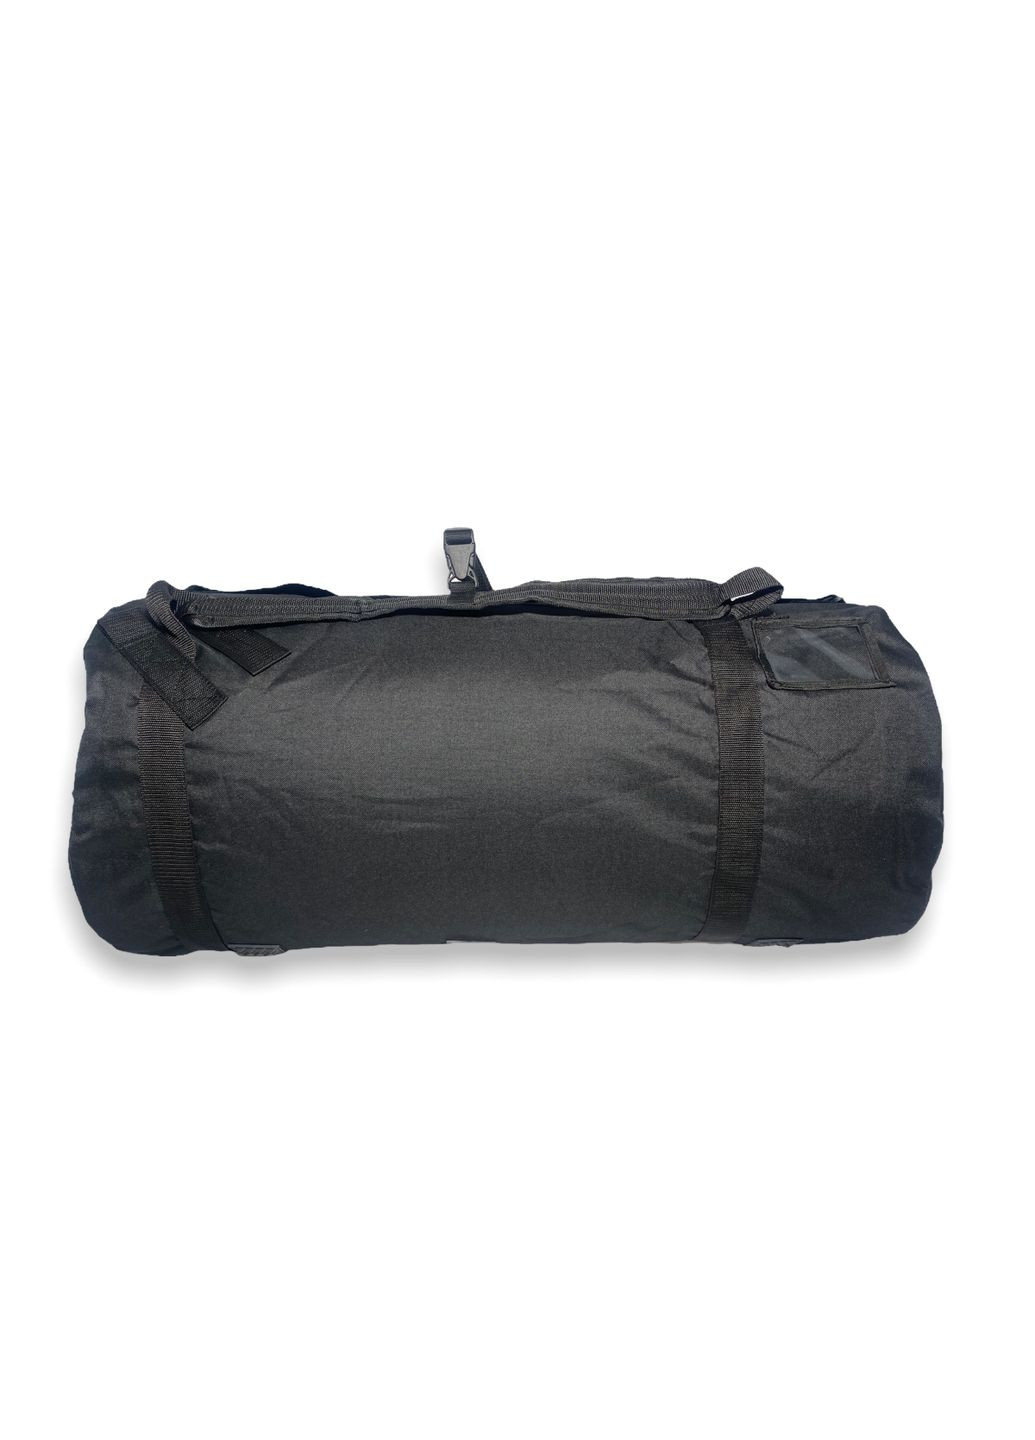 Сумкабаул дорожня рюкзак одне велике відділення 2 внутрішні кишені розміри 80*40*40 см чорна BagWay (285814855)